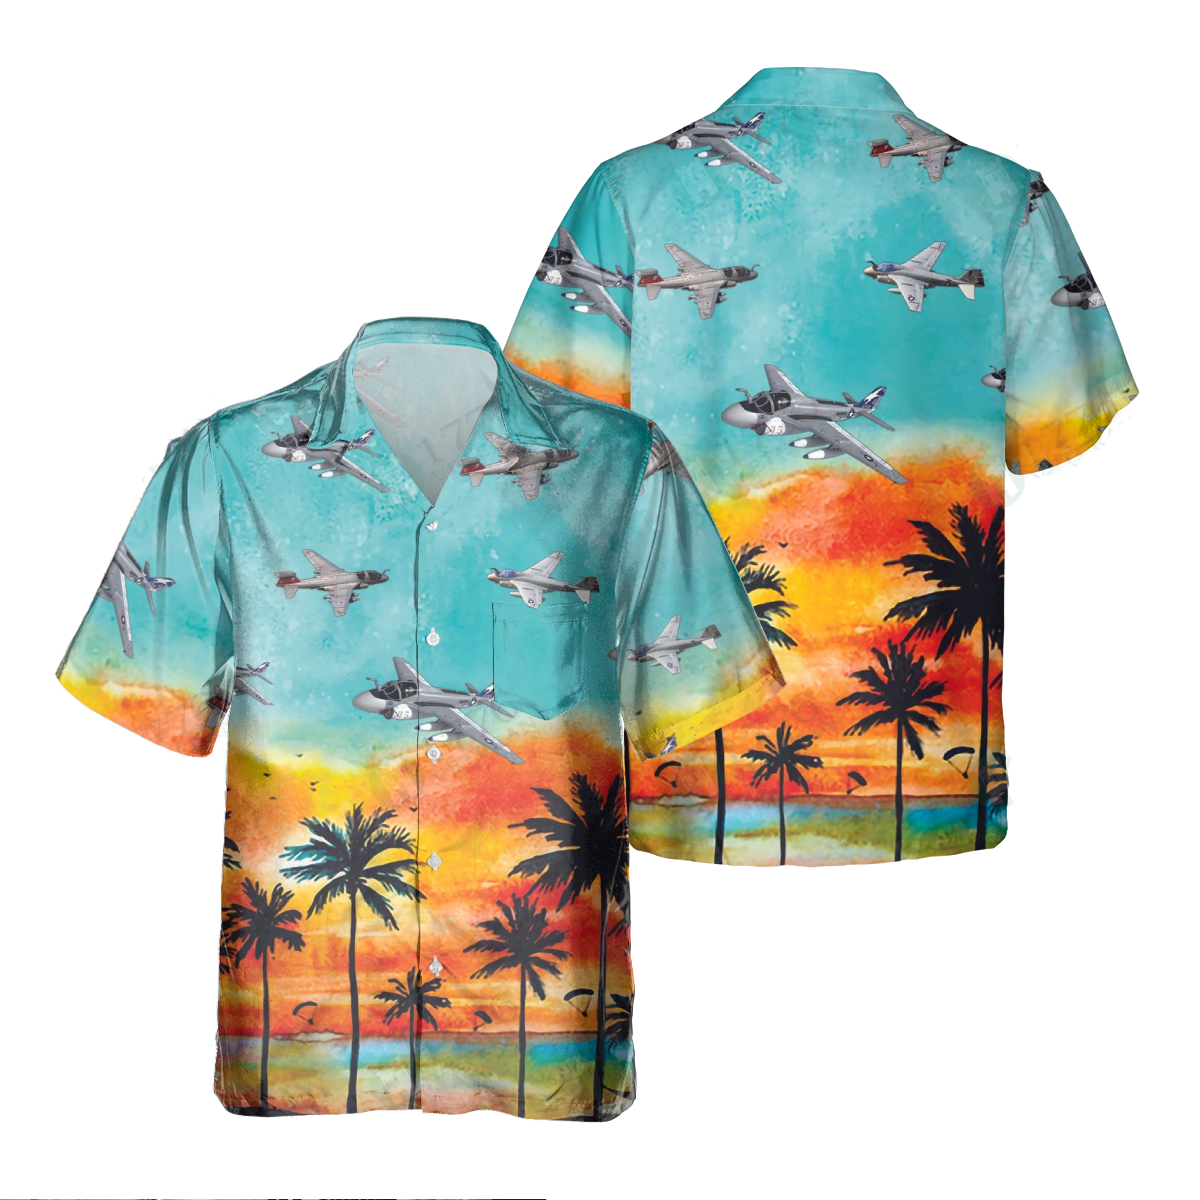 A-6 Intruder Pocket Hawaiian Shirt/ Hawaiian Shirt for Men Dad Veteran/ Patriot Day